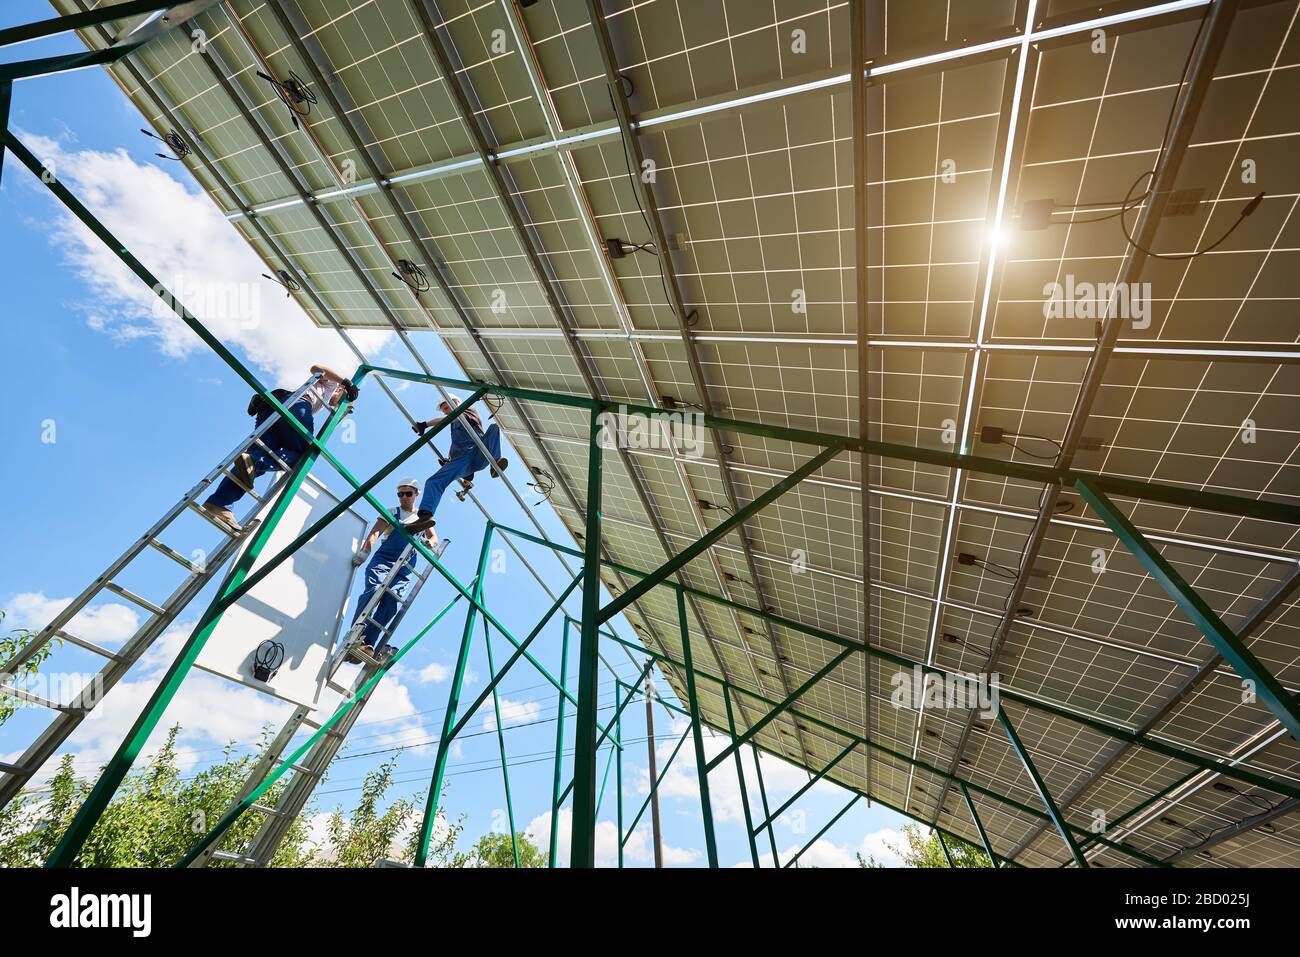 Professionelle Mitarbeiter installieren Solarpaneele auf der grünen Metallkonstruktion mit unterschiedlichen Geräten. Innovative Lösung für die Energielösung. Nutzung erneuerbarer Ressourcen. Grüne Energie. Stockfoto